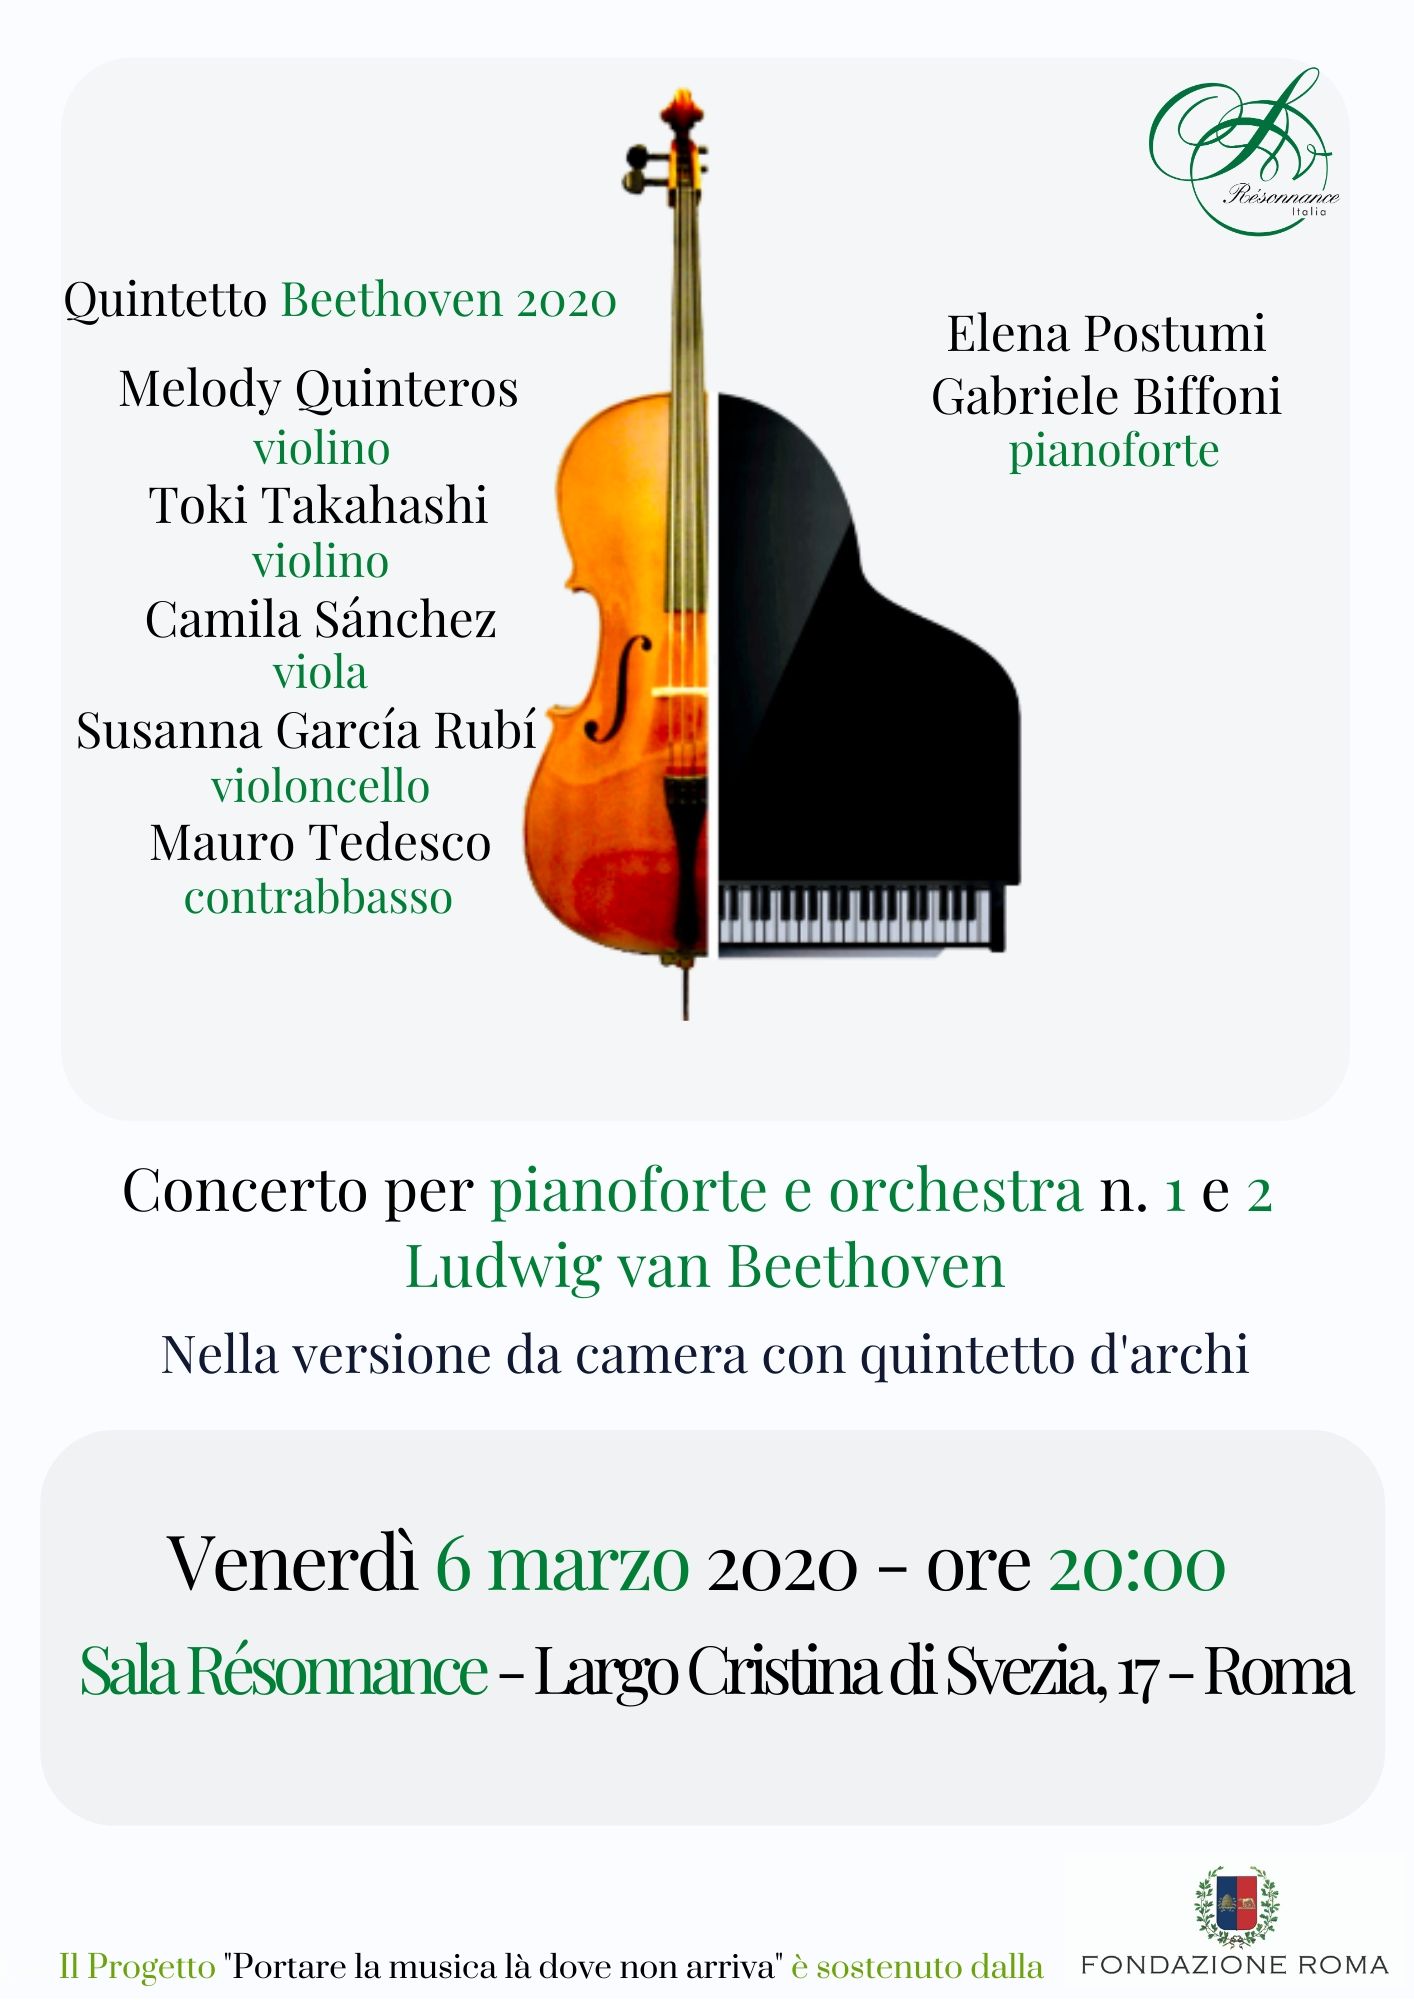 Concerto n°1 e 2 di Beethoven con Elena Postumi e Gabriele Biffoni ed il Quintetto Beethoven 2020